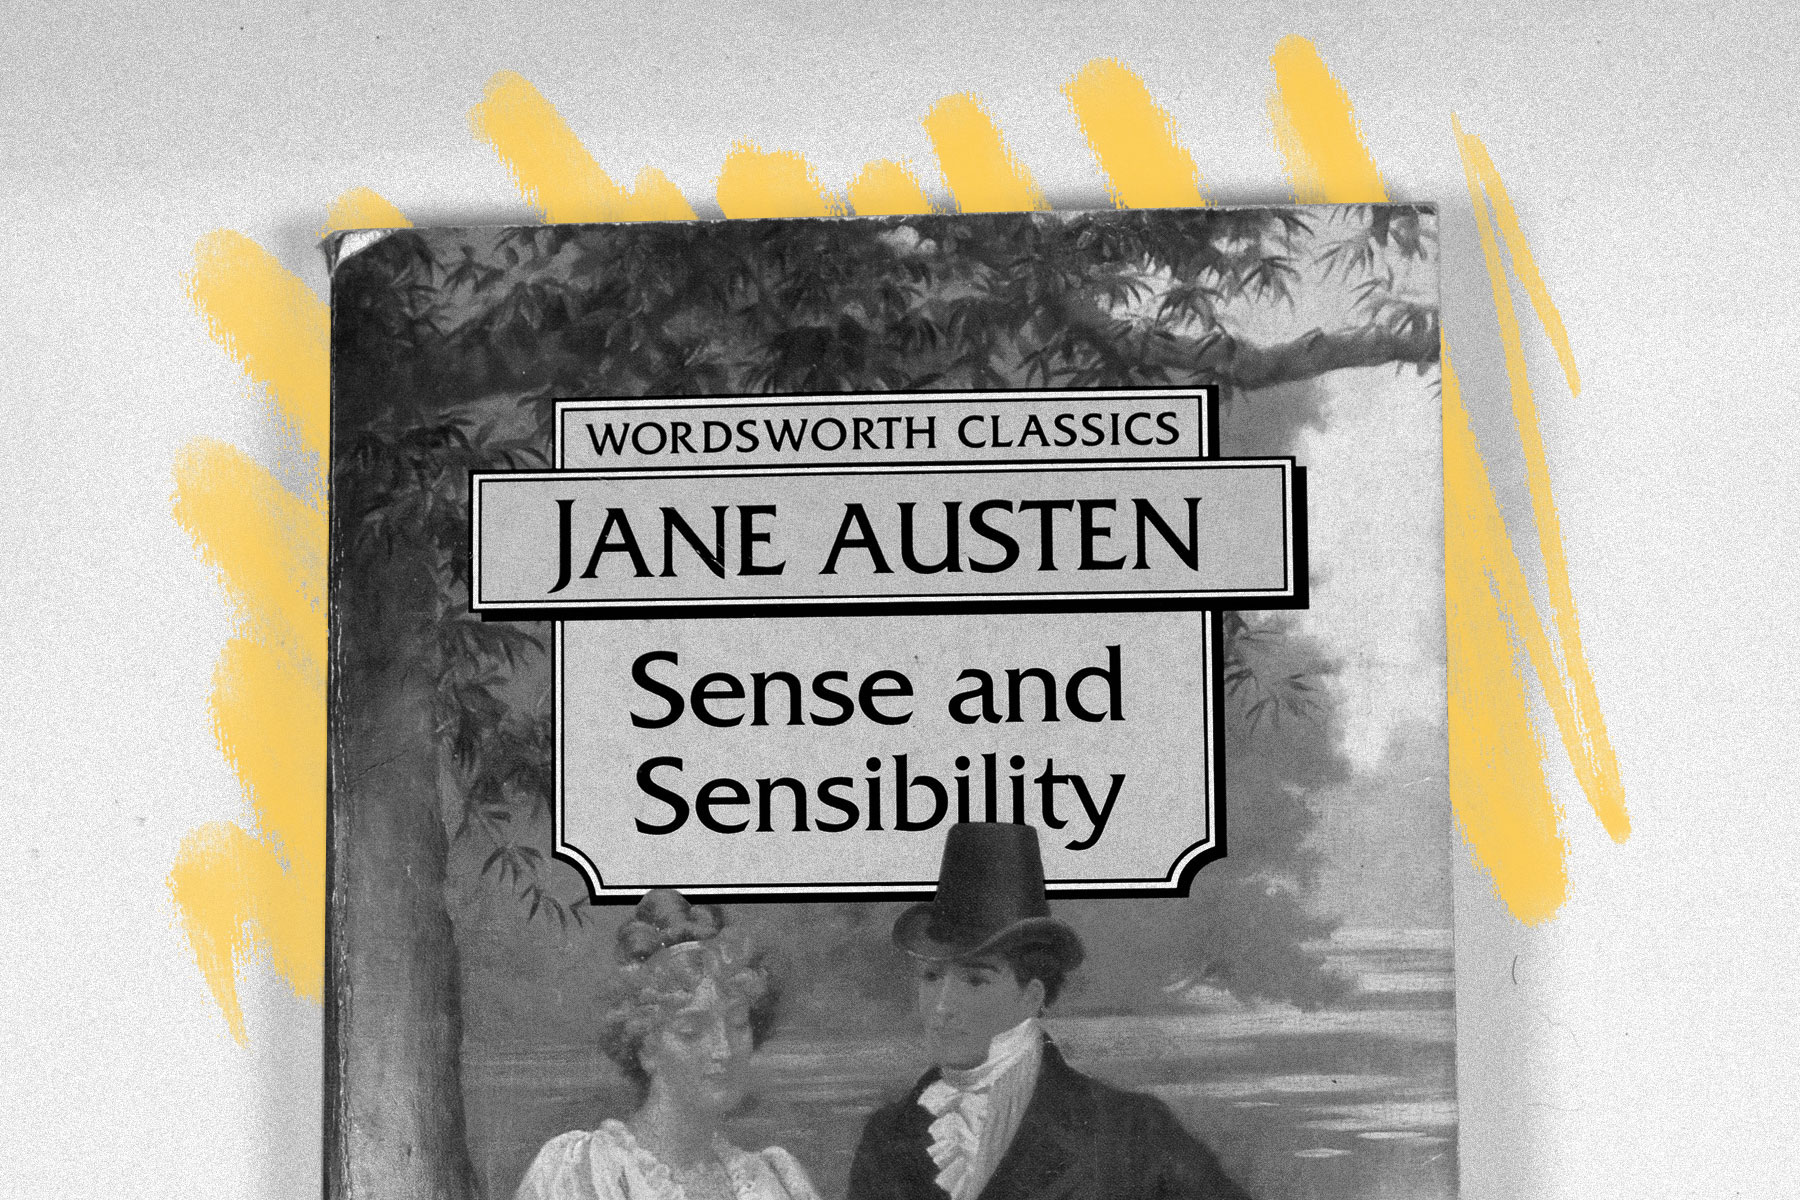 "Sense and Sensibility"